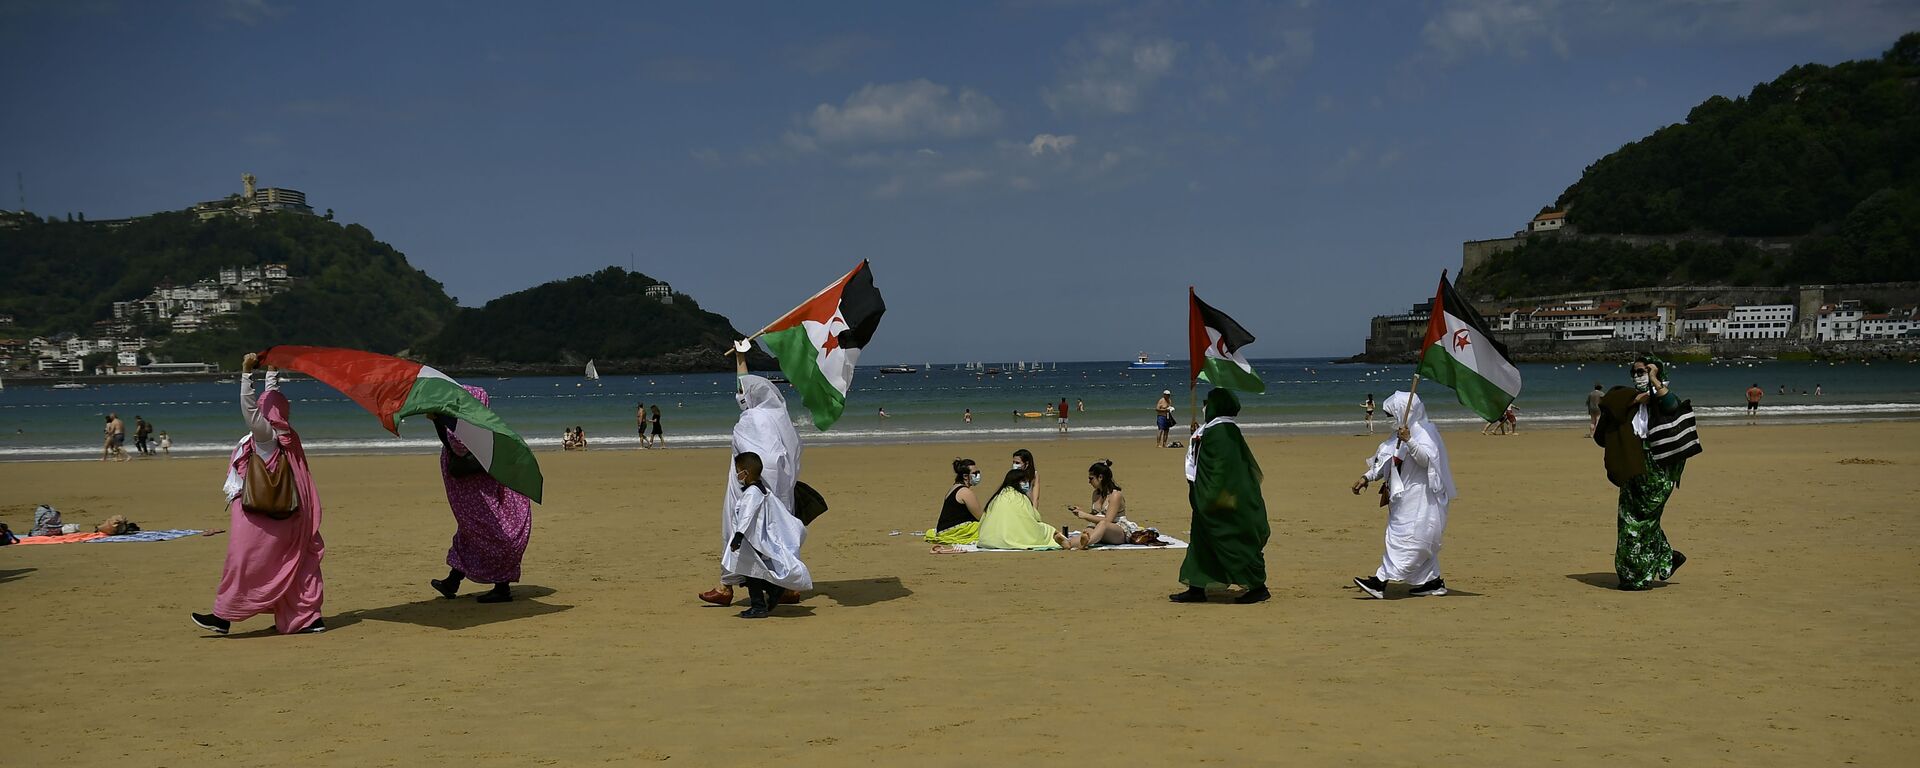 متظاهرون من الصحراء يلوحون بأعلام في مسيرة على الشاطئ في سان سيباستيان، إسبانيا 30 مايو 2021 - سبوتنيك عربي, 1920, 29.01.2022